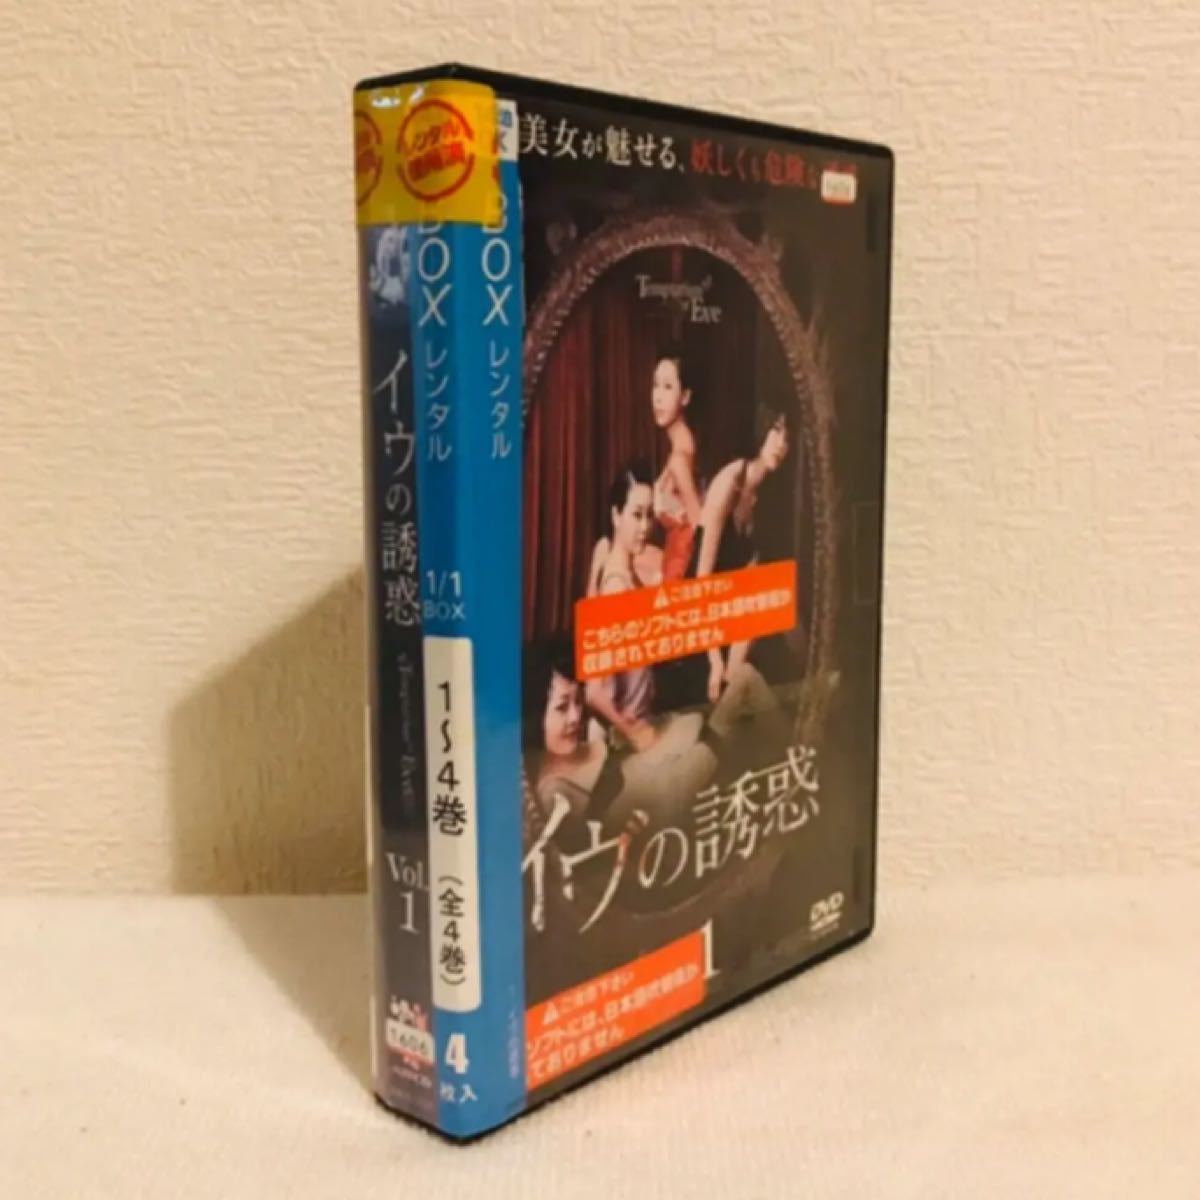 『イヴの誘惑』 全4巻(完) レンタル落ち DVDセット 韓国ドラマ